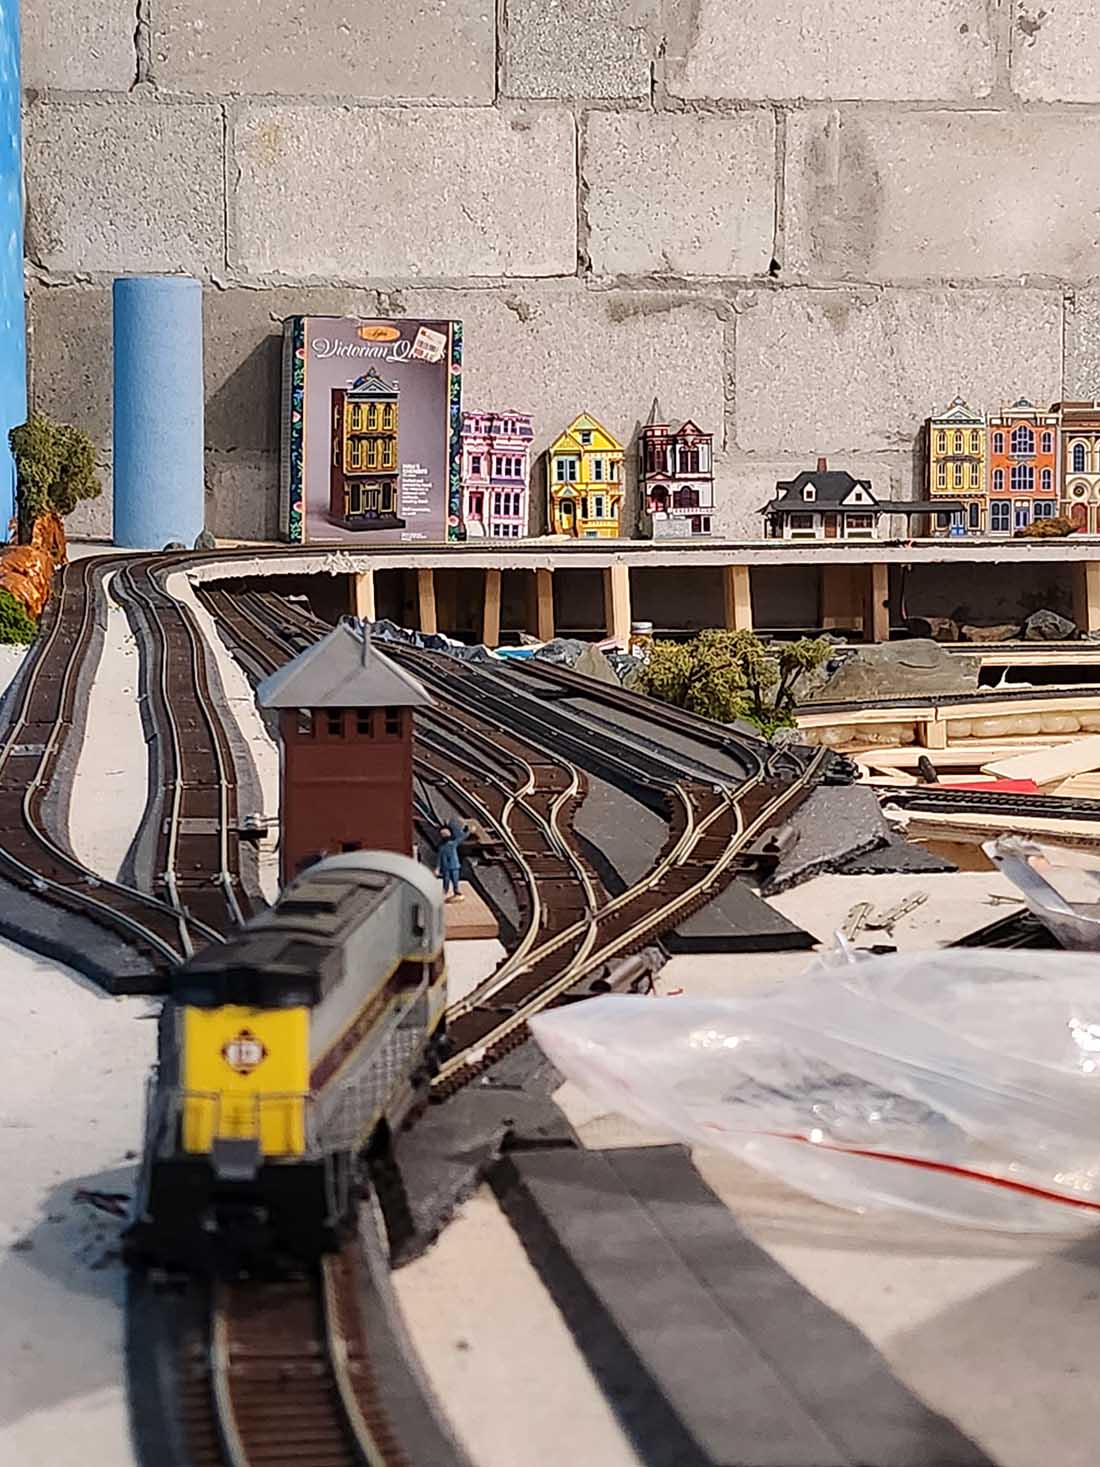 Erie Lackawanna model railroad sidings